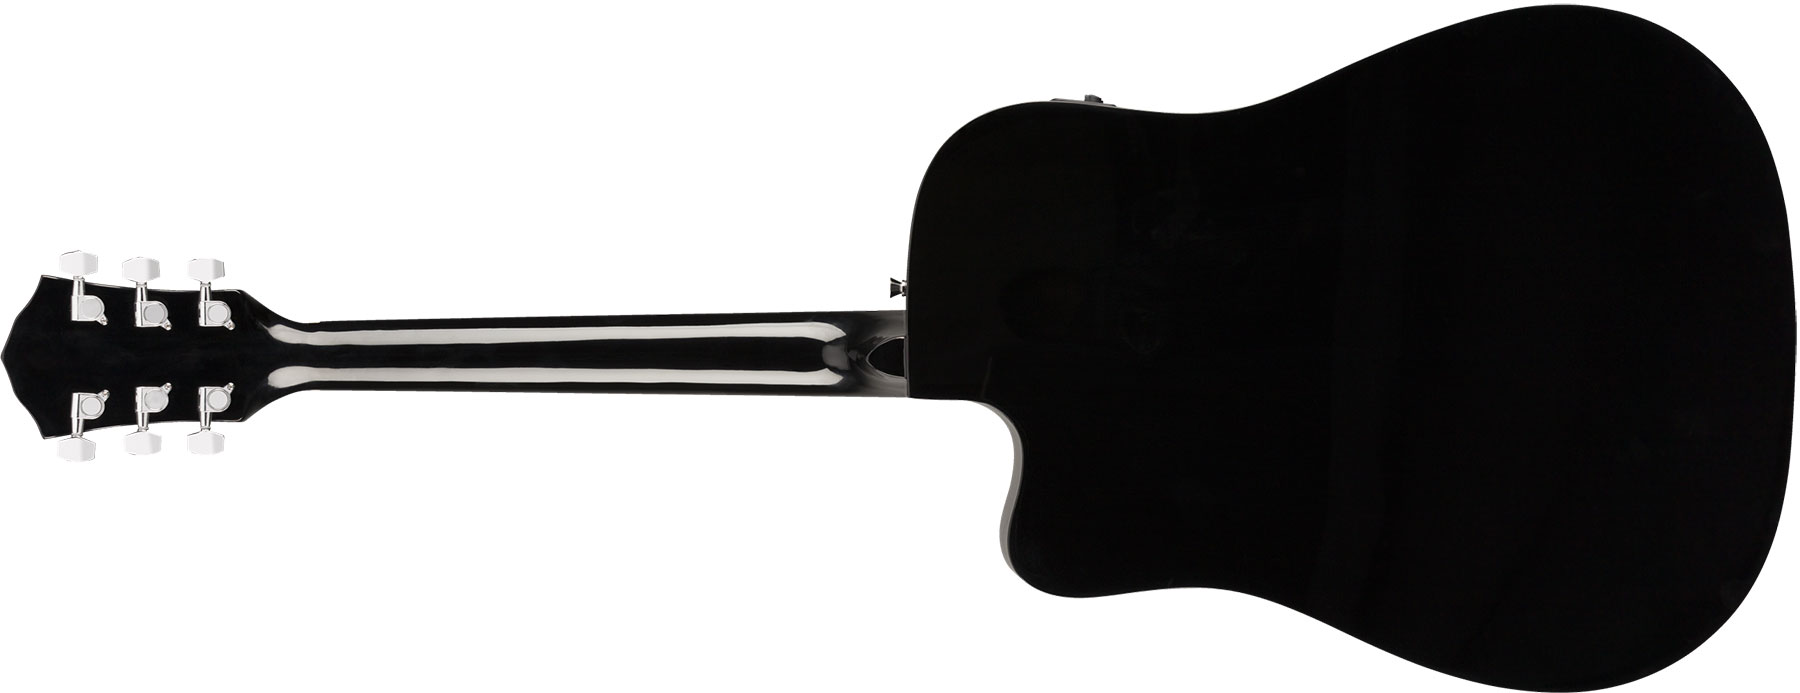 Fender Fa-125ce Dreadnought Alternative Epicea Acajou Wal - Sunburst - Elektroakustische Gitarre - Variation 1